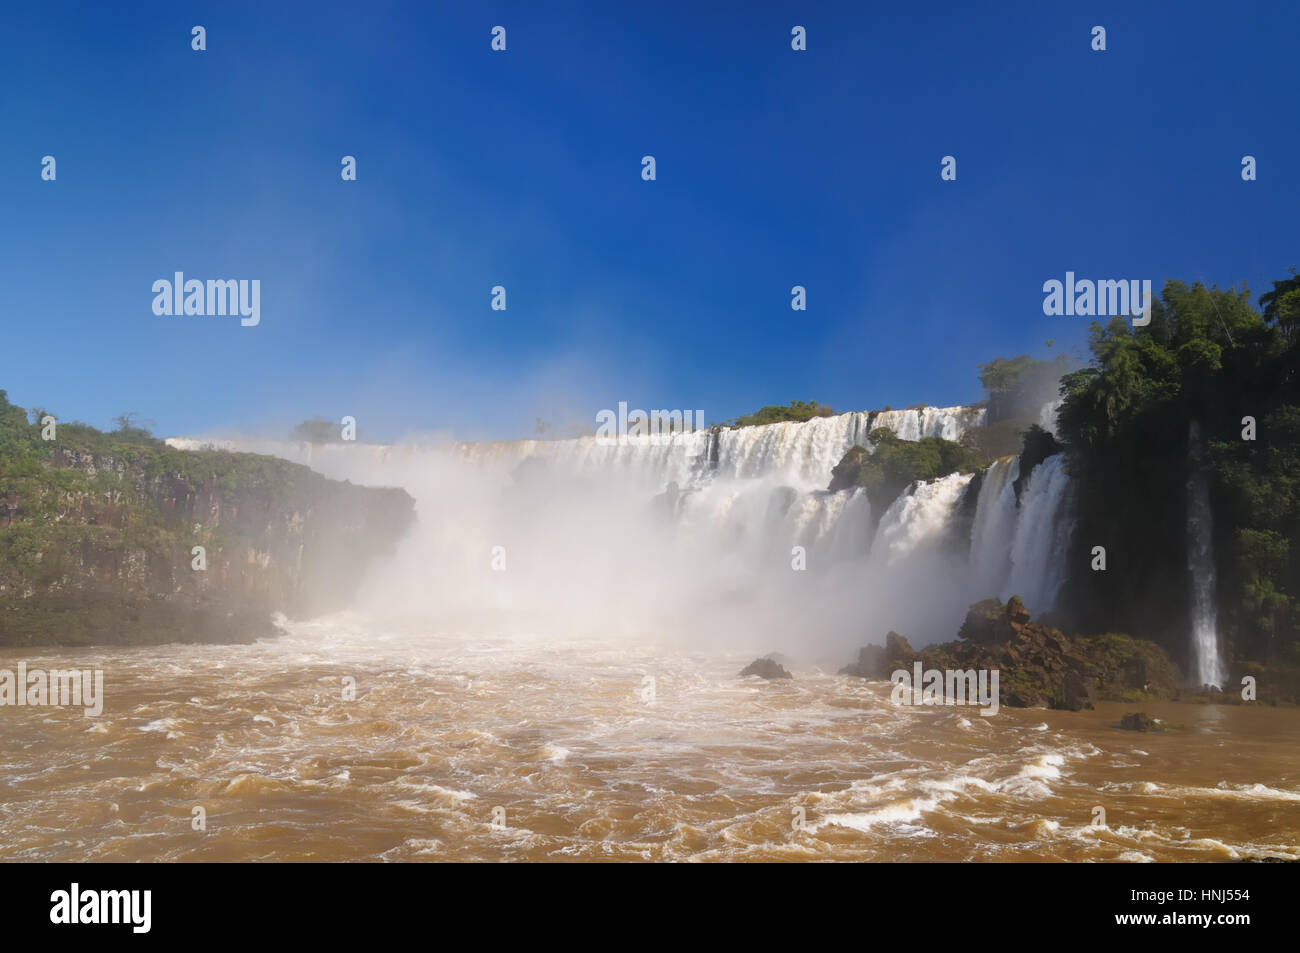 Les plus grandes chutes d'eau sur la terre, situé à la frontière du Brésil, l'Argentine et le Paraguay. D'Iguazu, l'Amérique du Sud Banque D'Images